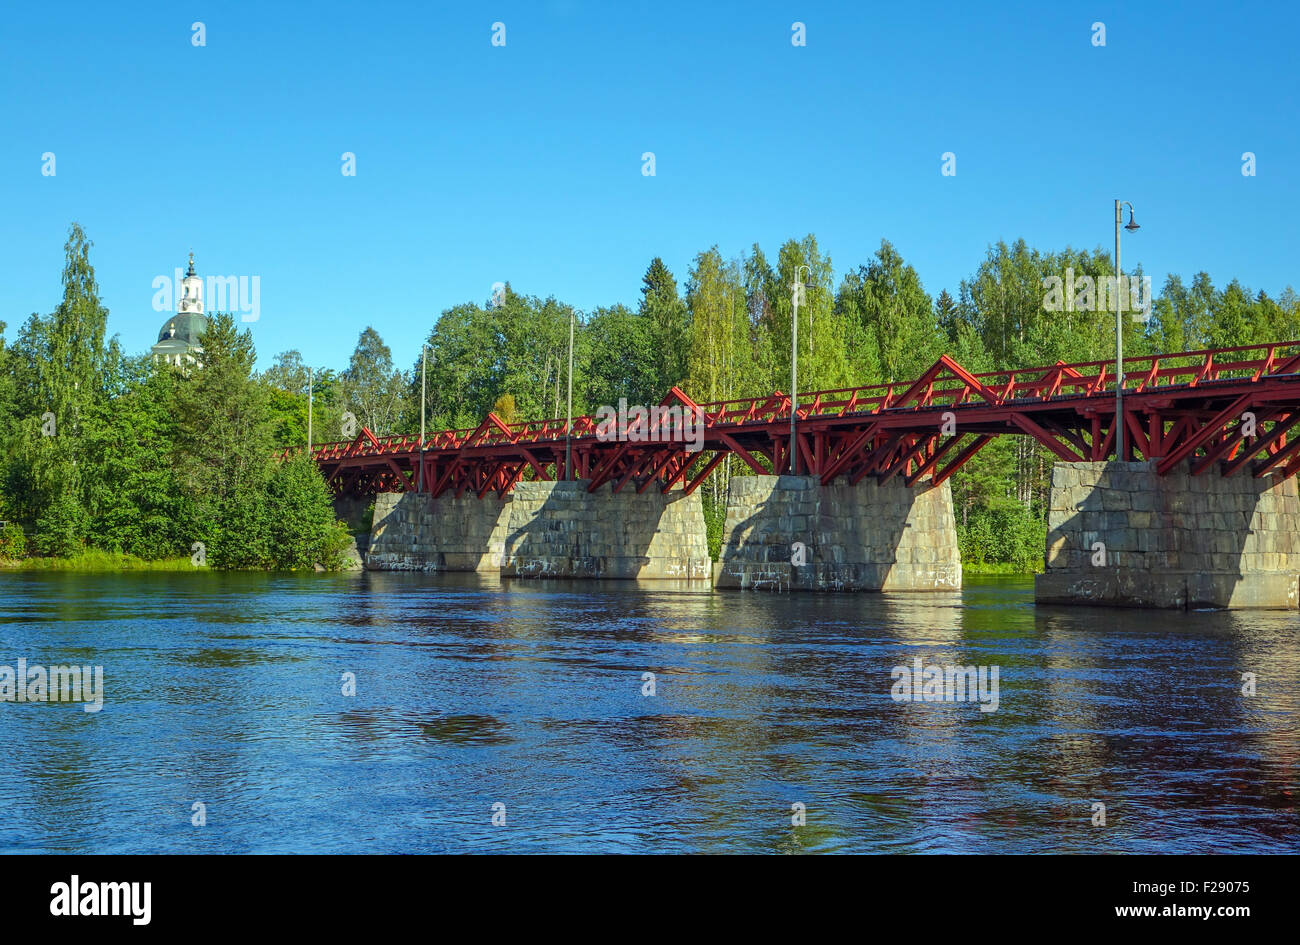 Oldest wooden bridge in Sweden, Lejonstromsbron, Skelleftea, Swedish Lapland Stock Photo